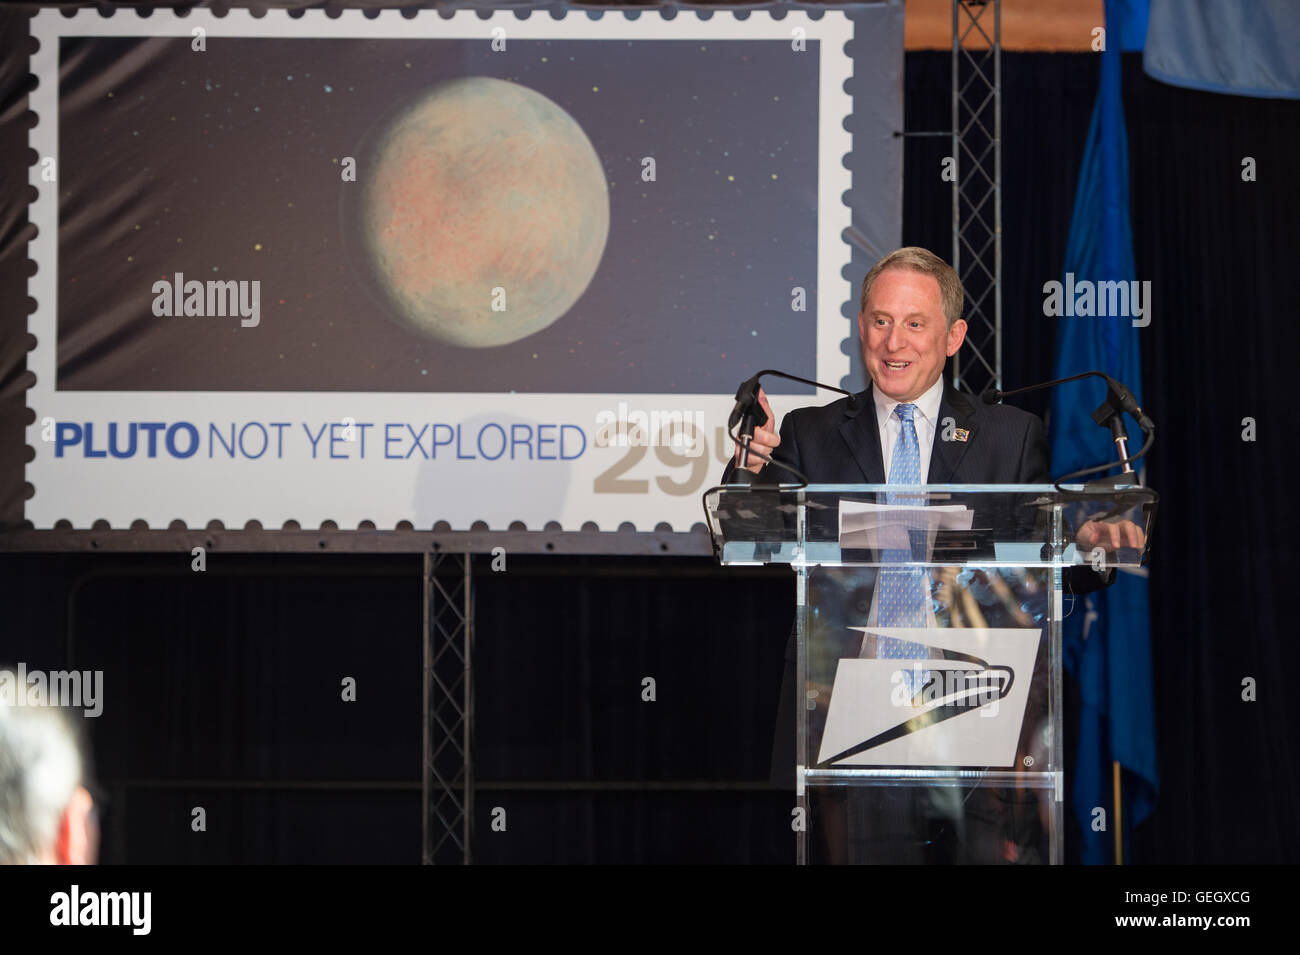 Pluton pas encore exploré jeux de timbres du monde Guinness 07190002 Banque D'Images